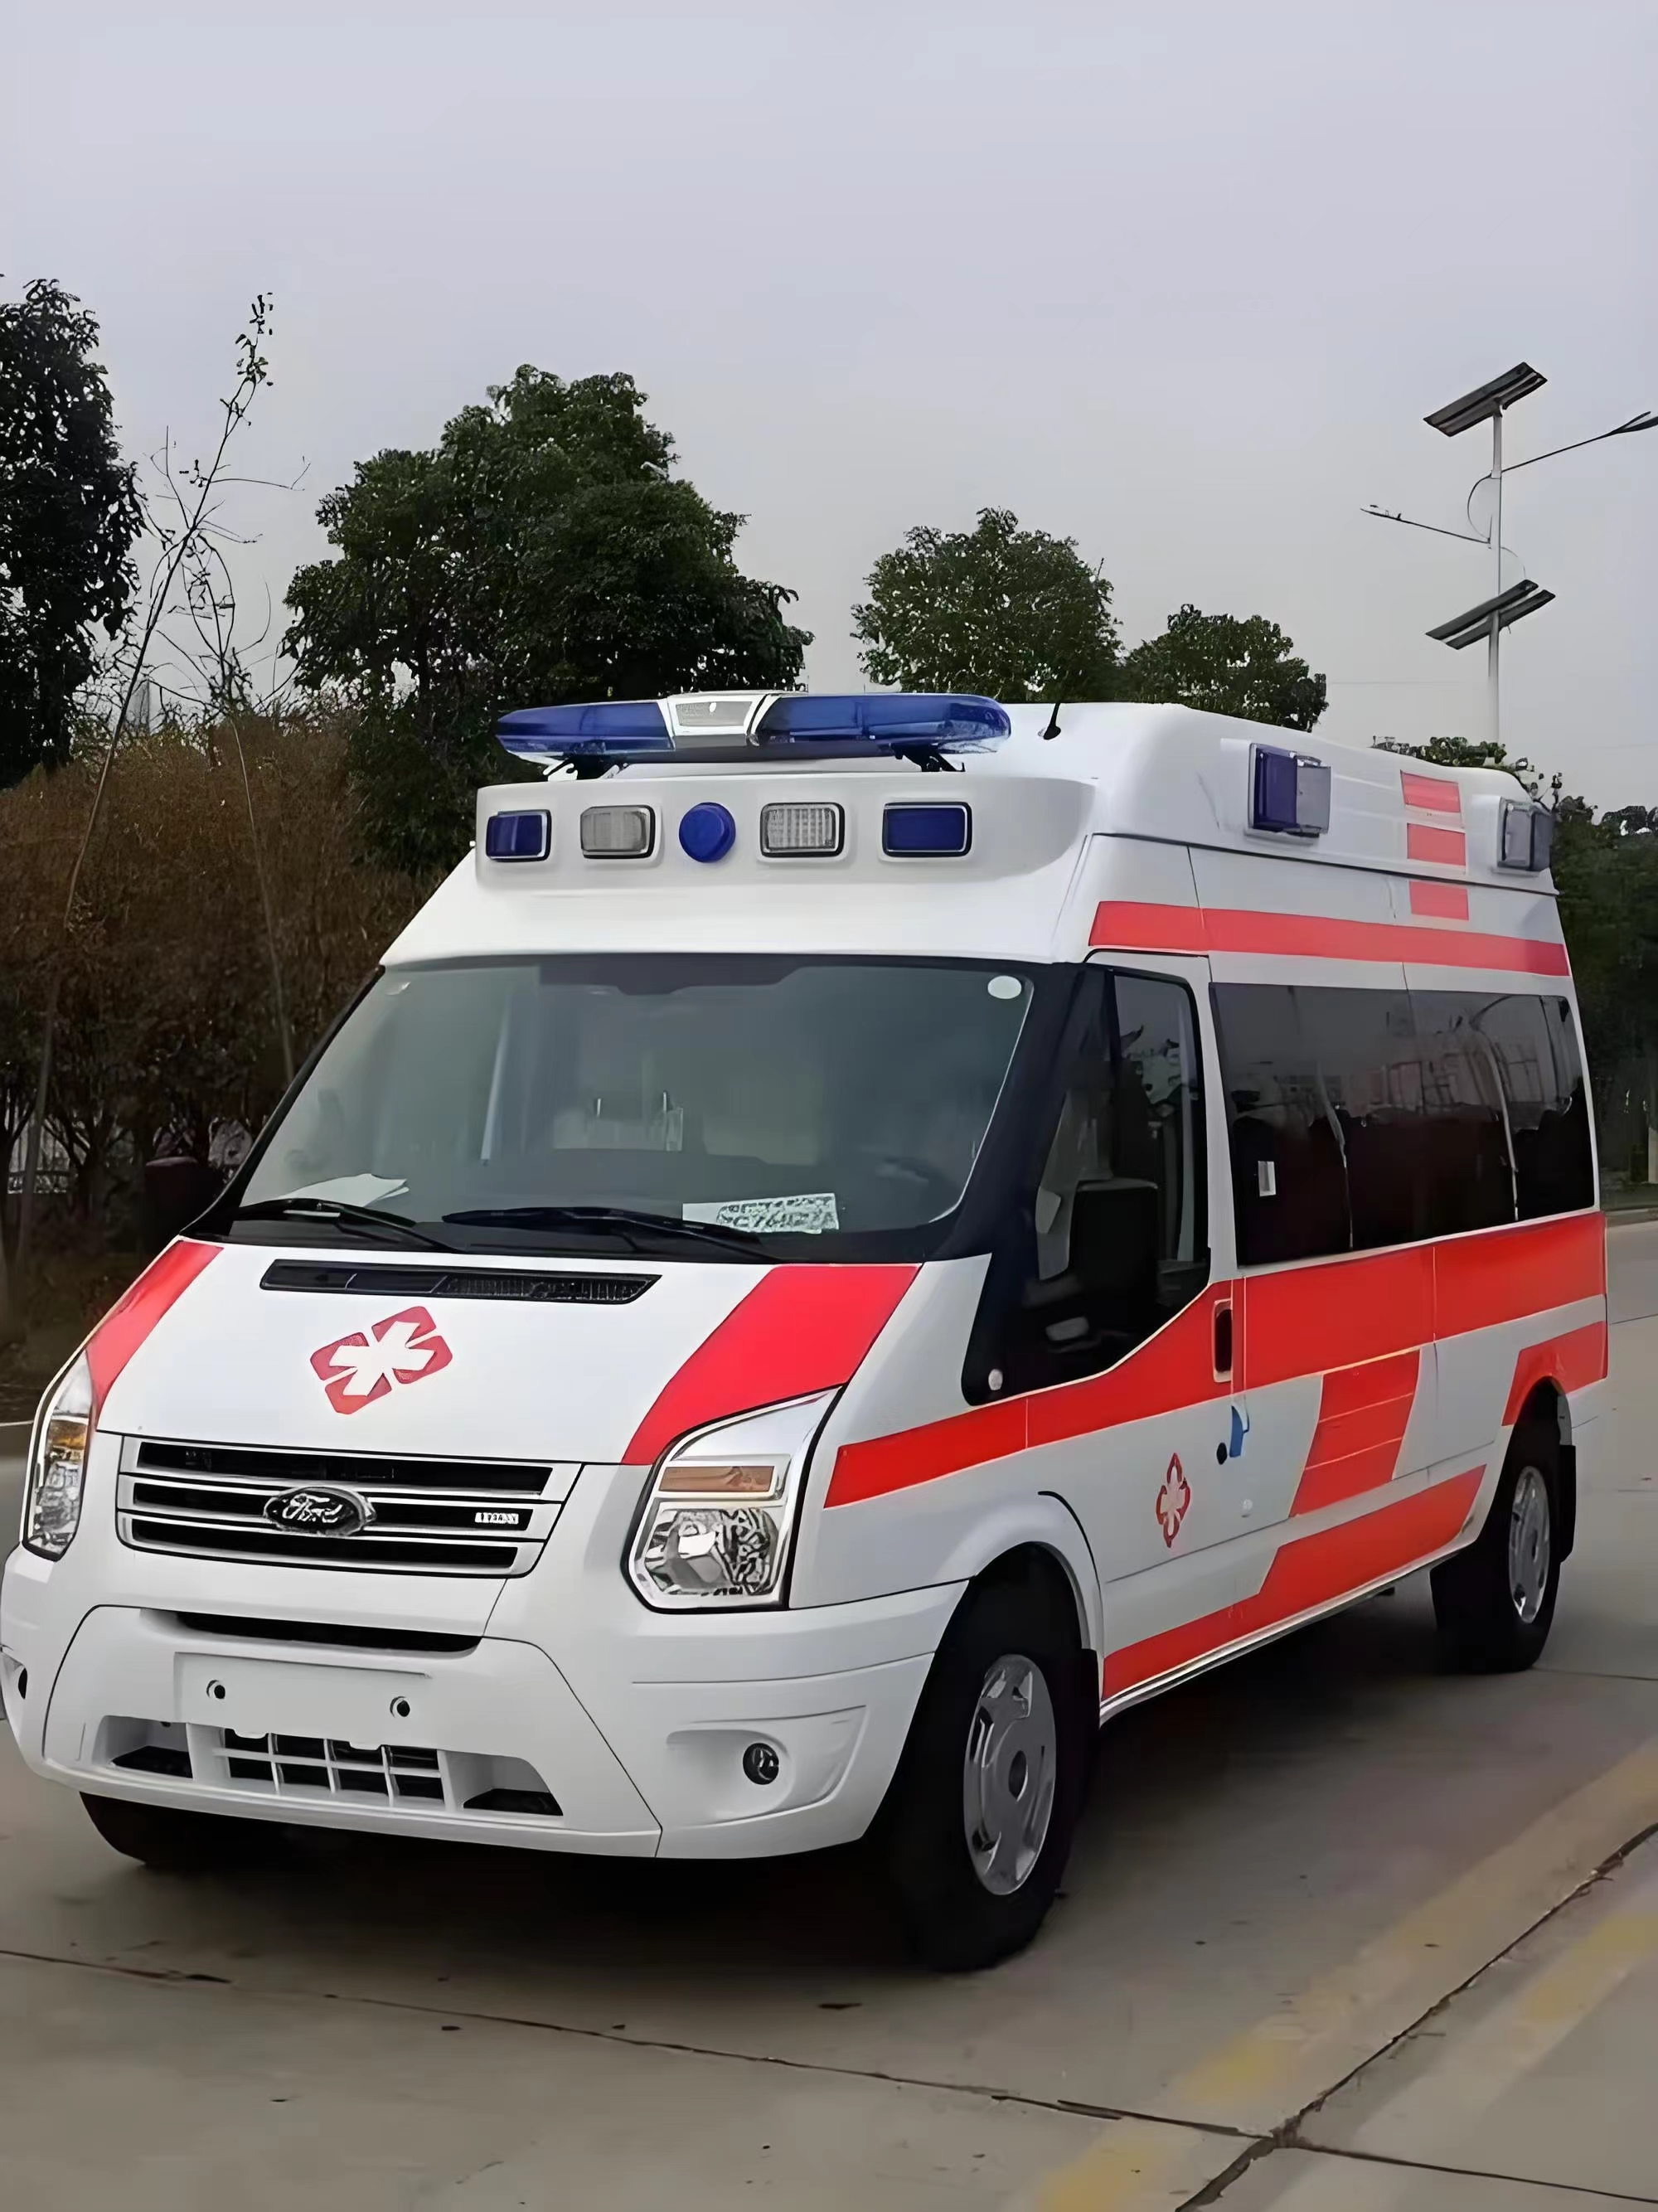 哈尔滨非急救转运平台-私人救护车出租-全国救护团队